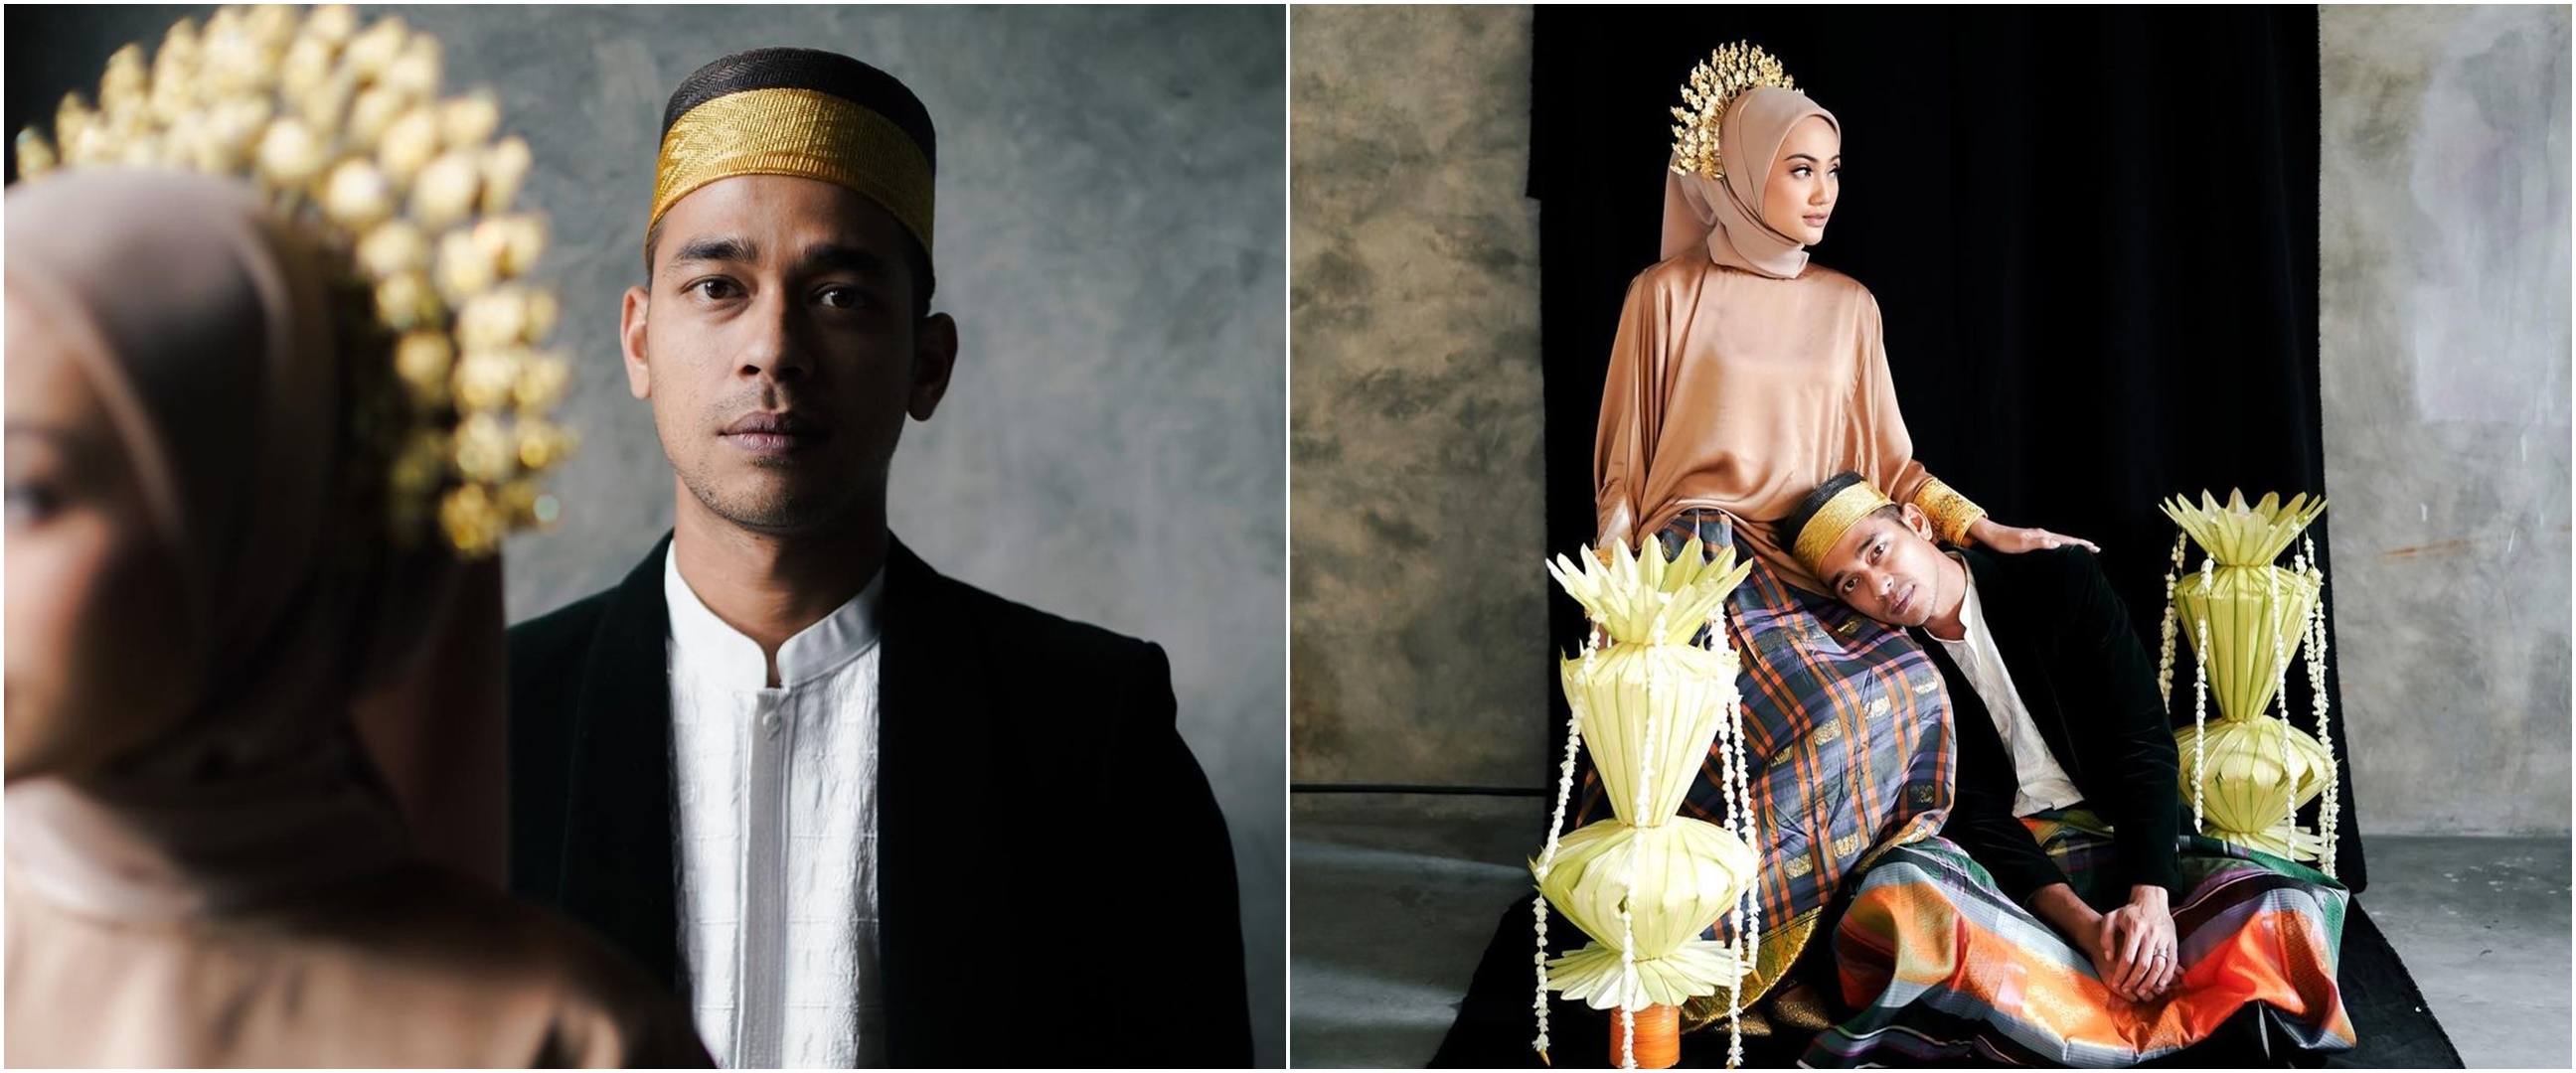 Wafda Saifan mantan Kesha Ratuliu persunting dokter gigi asal Bugis, ini 9 momen bahagia pernikahannya